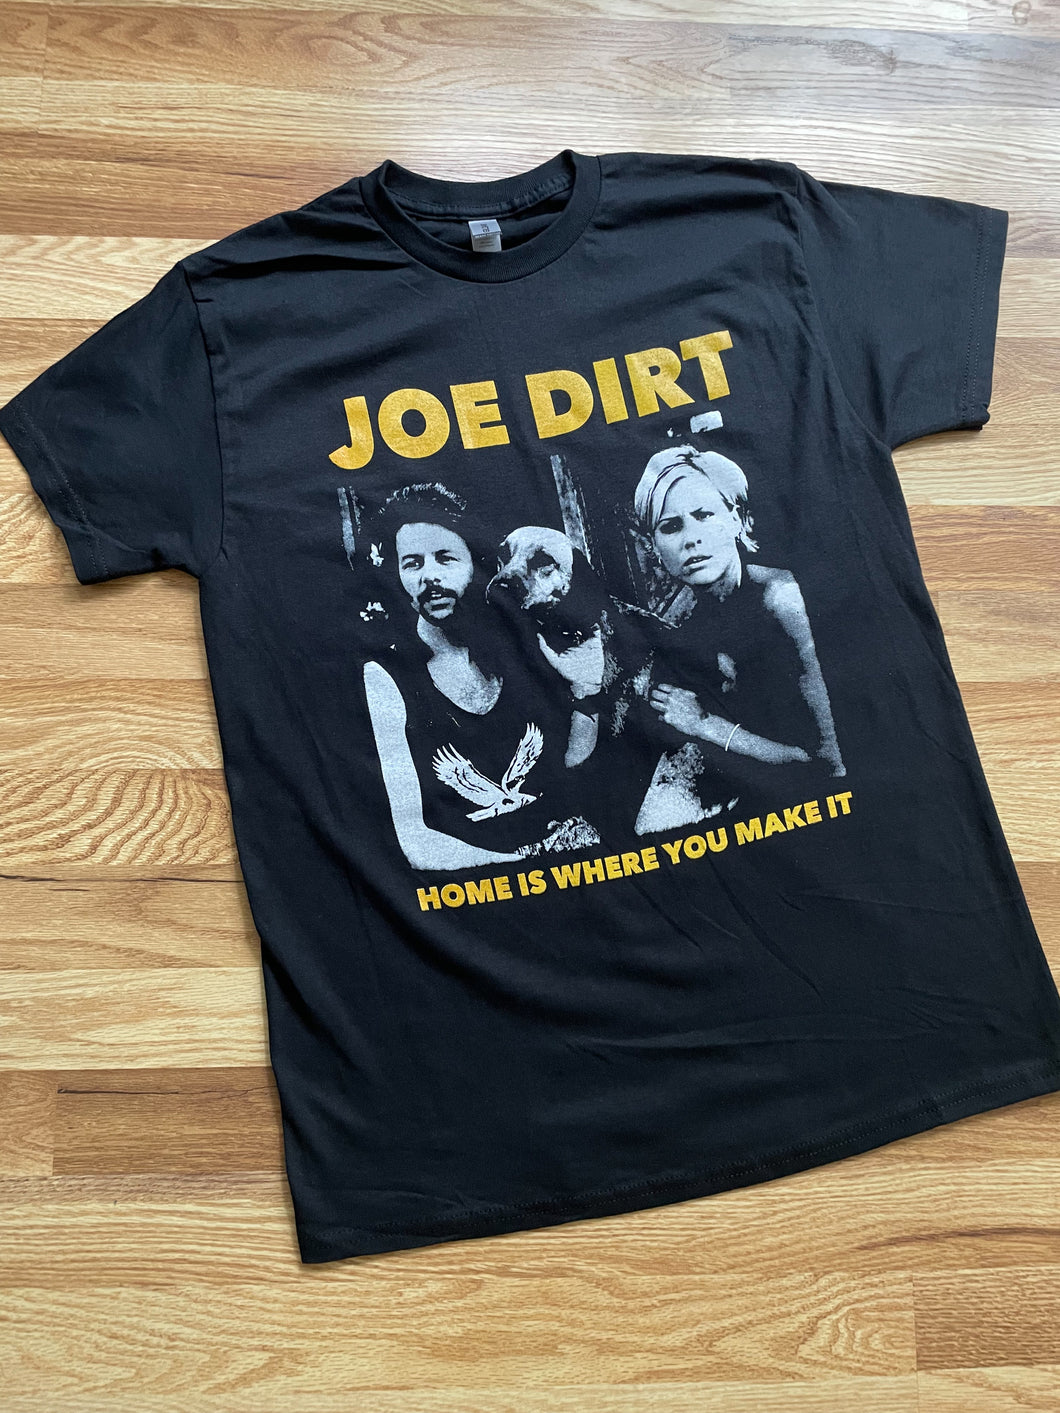 Joe Dirt shirt